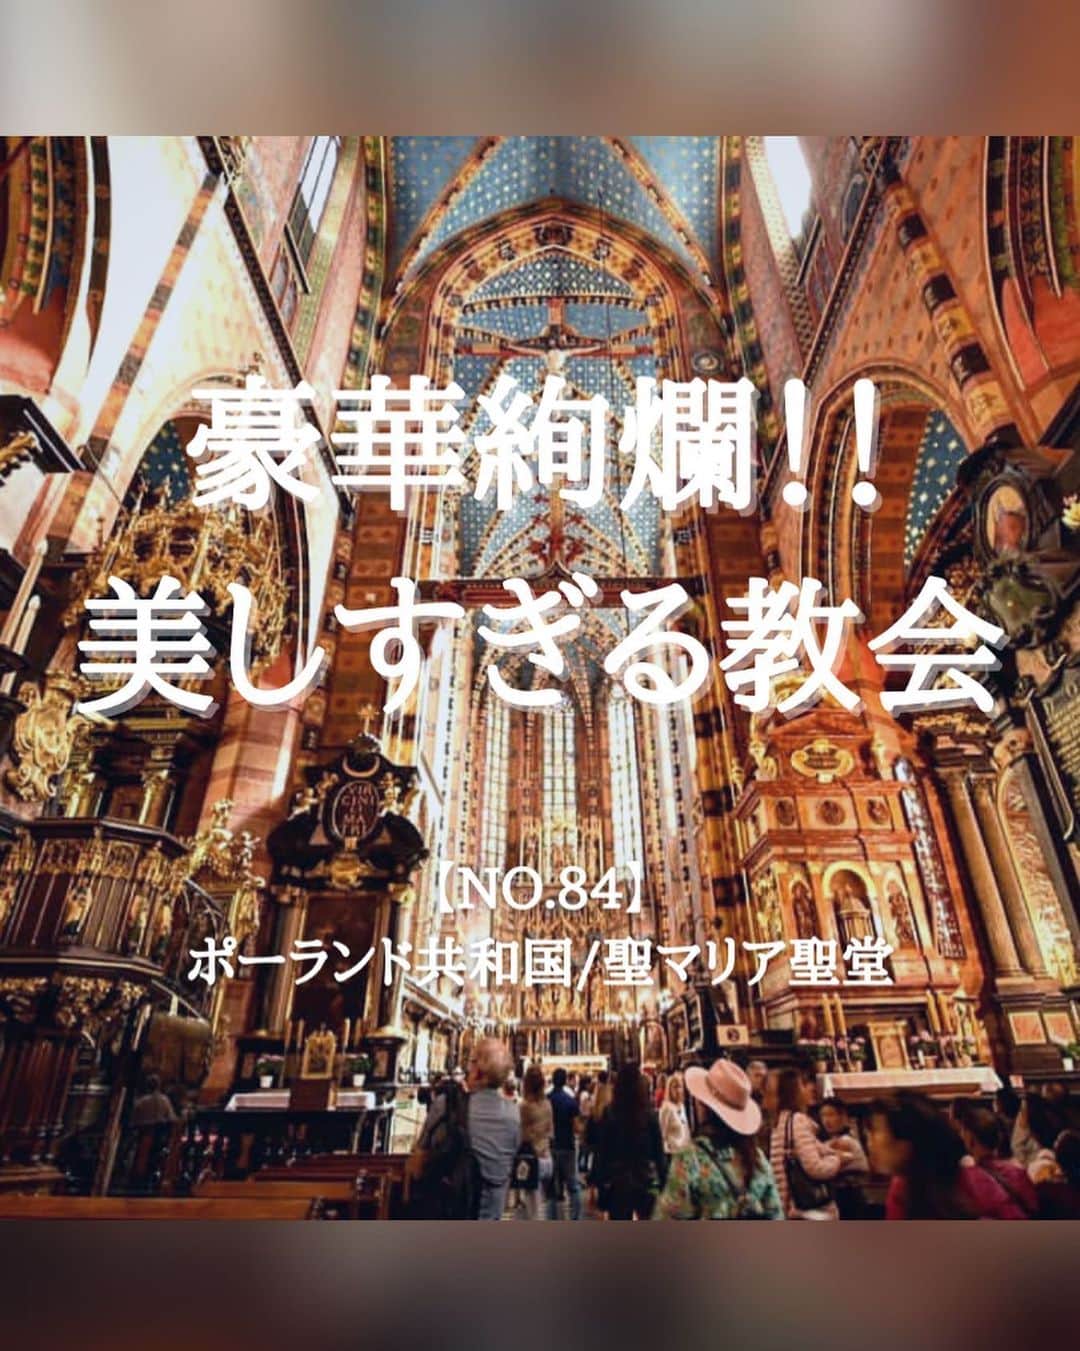 タビイクのインスタグラム：「【84.ポーランド共和国🇵🇱】  歴史的な街並みが#世界遺産 に登録されている、ポーランドの古都#クラクフ 。その中央広場にあるのが「ポーランドで最も美しい教会」ともいわれる#聖マリア聖堂 🔔  特に美しい祭壇、壁に施された煌びやかな装飾、美しい光が差し込むステンドグラス…。内装は息を呑むほど豪華な美しさです✨  .  ポーランドの物価はヨーロッパにしては安く、日本の1/3程度とも言われています。  ショパンの故郷であり、ショパンの心臓が安置された教会も🎶 また、ポーランドへ来たら是非寄って欲しいのが、アウシュビッツ収容所。  ポーランドは様々な体験や学びのある魅力的な国です😌  【#タビイク世界制覇 】  photo by @ryuichi_trip   ✼••┈┈••✼••┈┈••✼••┈┈••✼••┈┈••✼ ••┈┈••✼ ﻿  \\写真で世界全ての国を巡る［写真で世界制覇］//  海外に行けない今だから 他の国のこともっと知ってみませんか？  @tabiiku をタグ付けすると、お写真が紹介されるかも！？  ✼••┈┈••✼••┈┈••✼••┈┈••✼••┈┈••✼ ••┈┈••✼  #mytravelgram #travelphotography #traveltheworld #traveler #travellover #絶景 #タビイク #ポーランド #Poland  #ヨーロッパ #秘境  #誰かに見せたい景色 #traveler #travellover #タビジョ #とっておきの旅スポット #ポーランド旅行  #Instagram  #worldheritage  #聖マリア教会 #Kraków #ステンドグラス #教会」